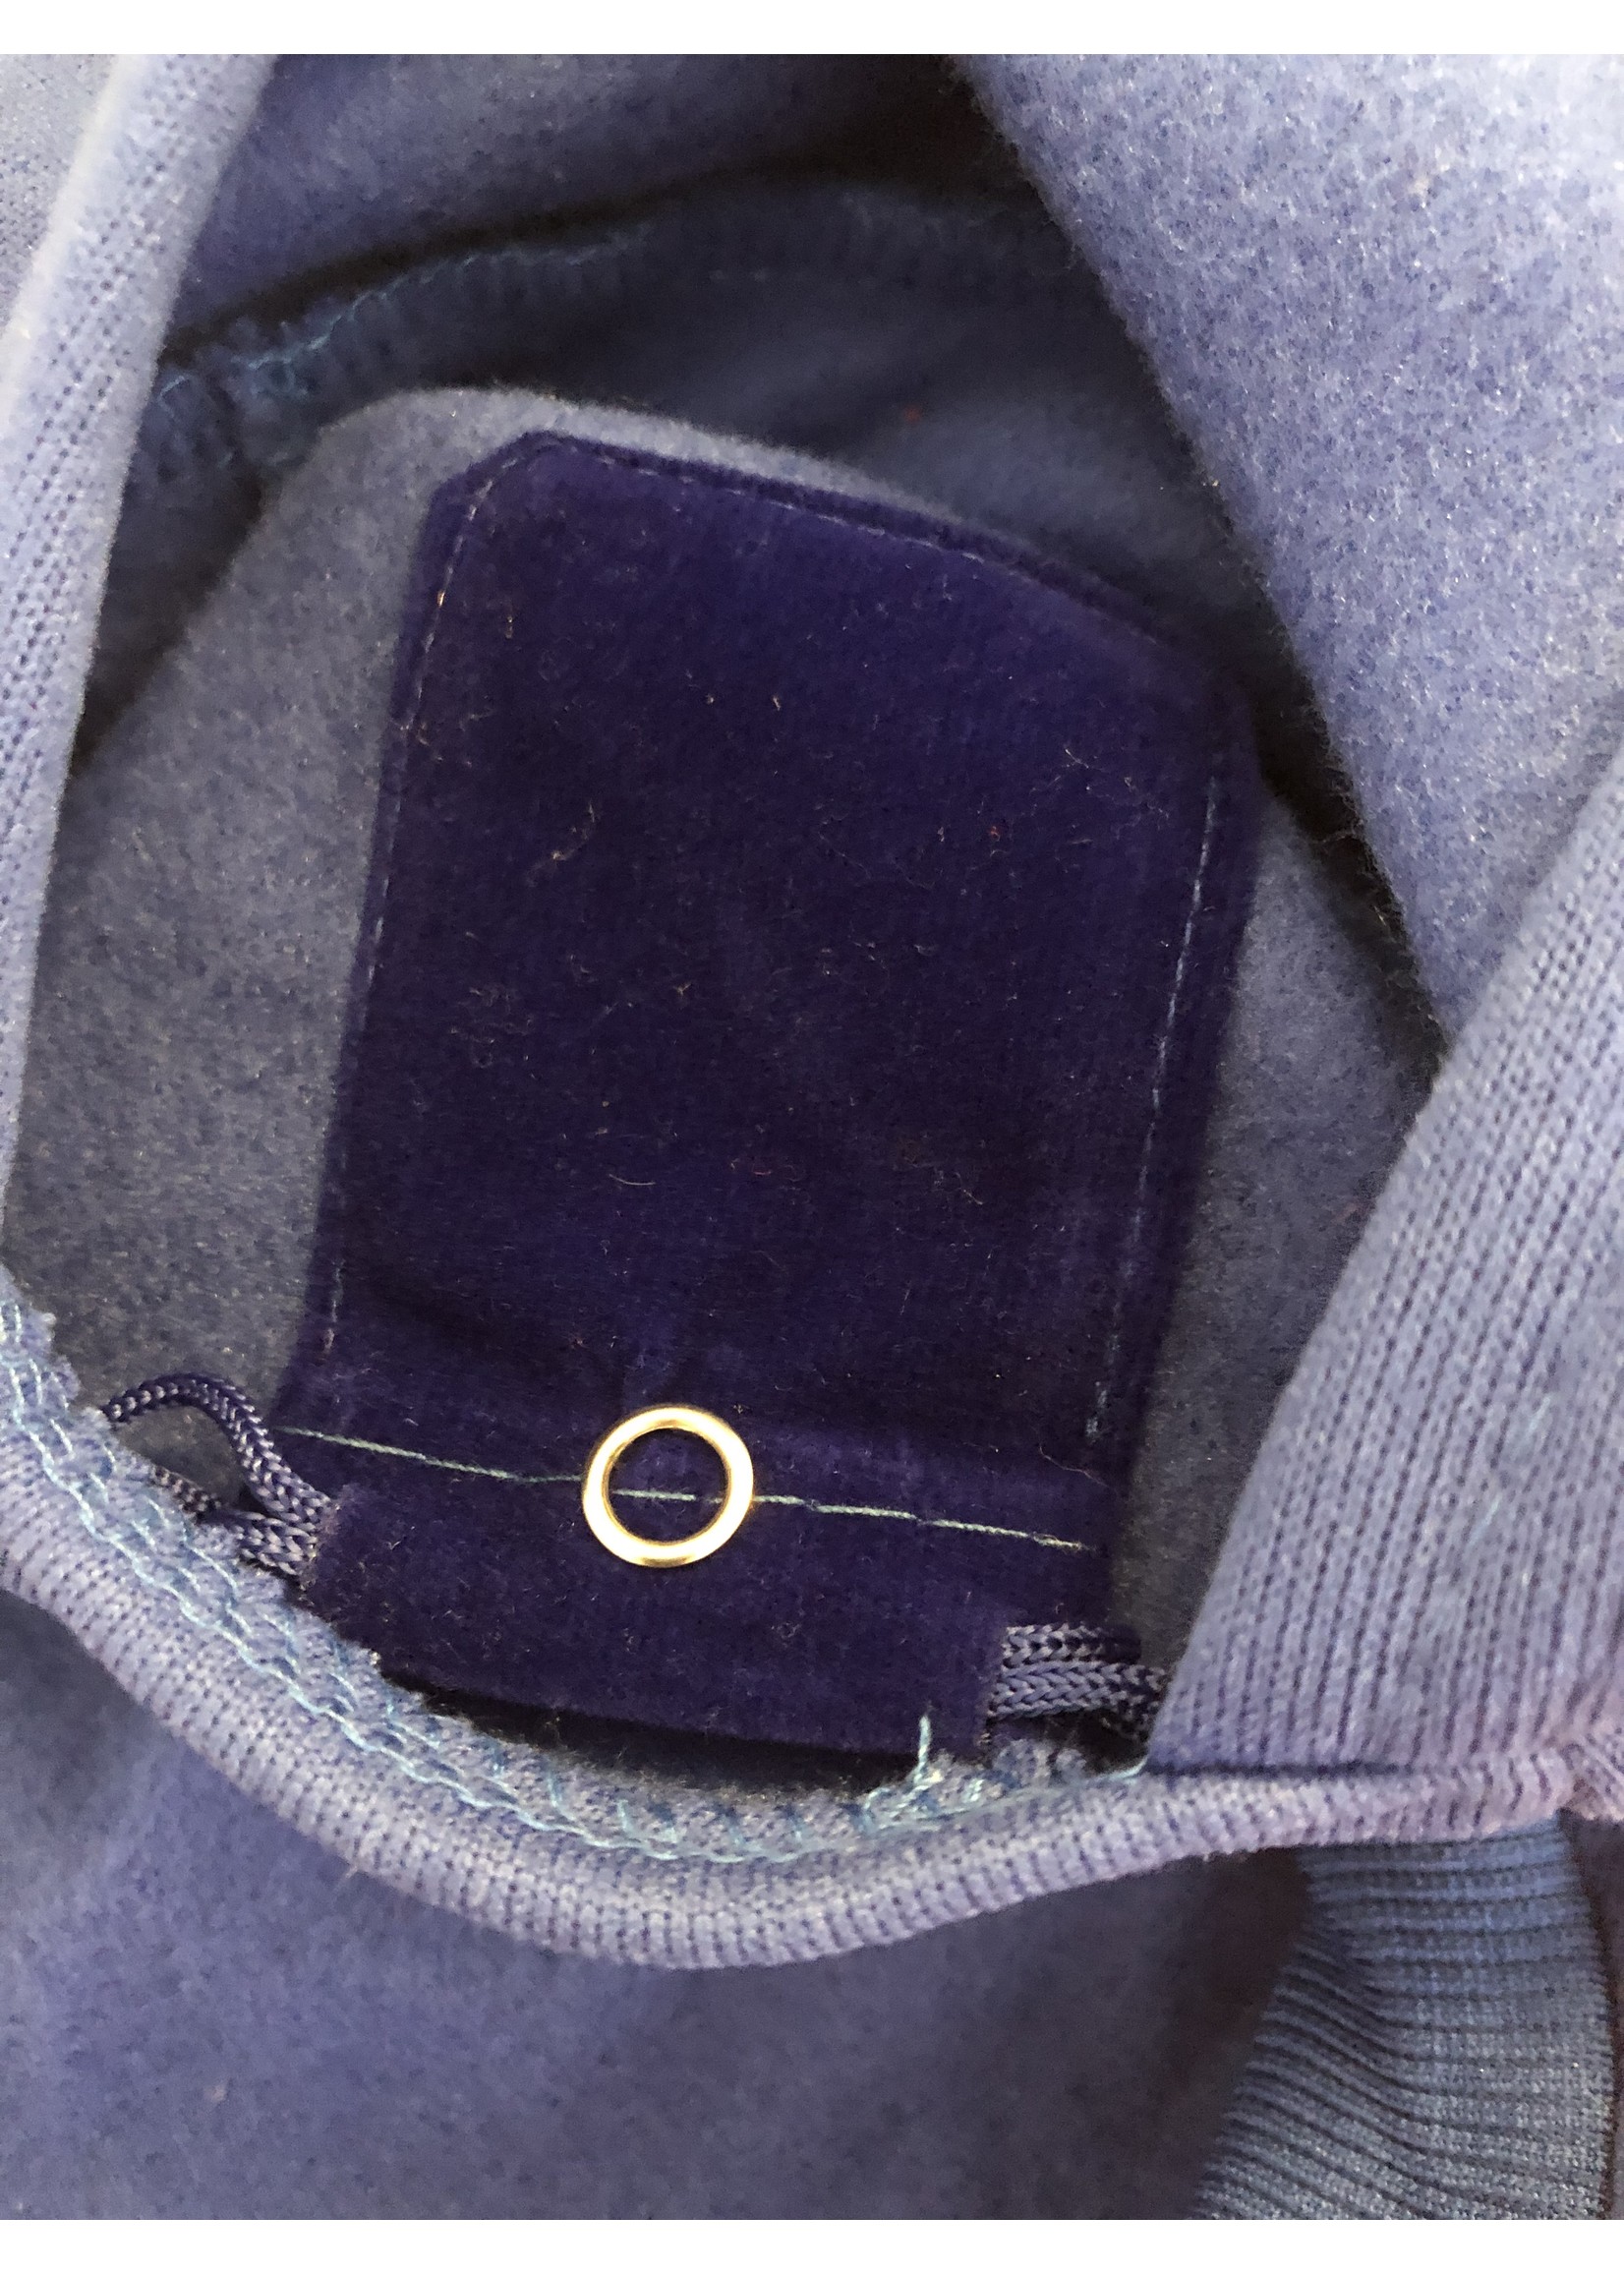 chandail adidog pochette intégrée - bleu-VENTE FINALE